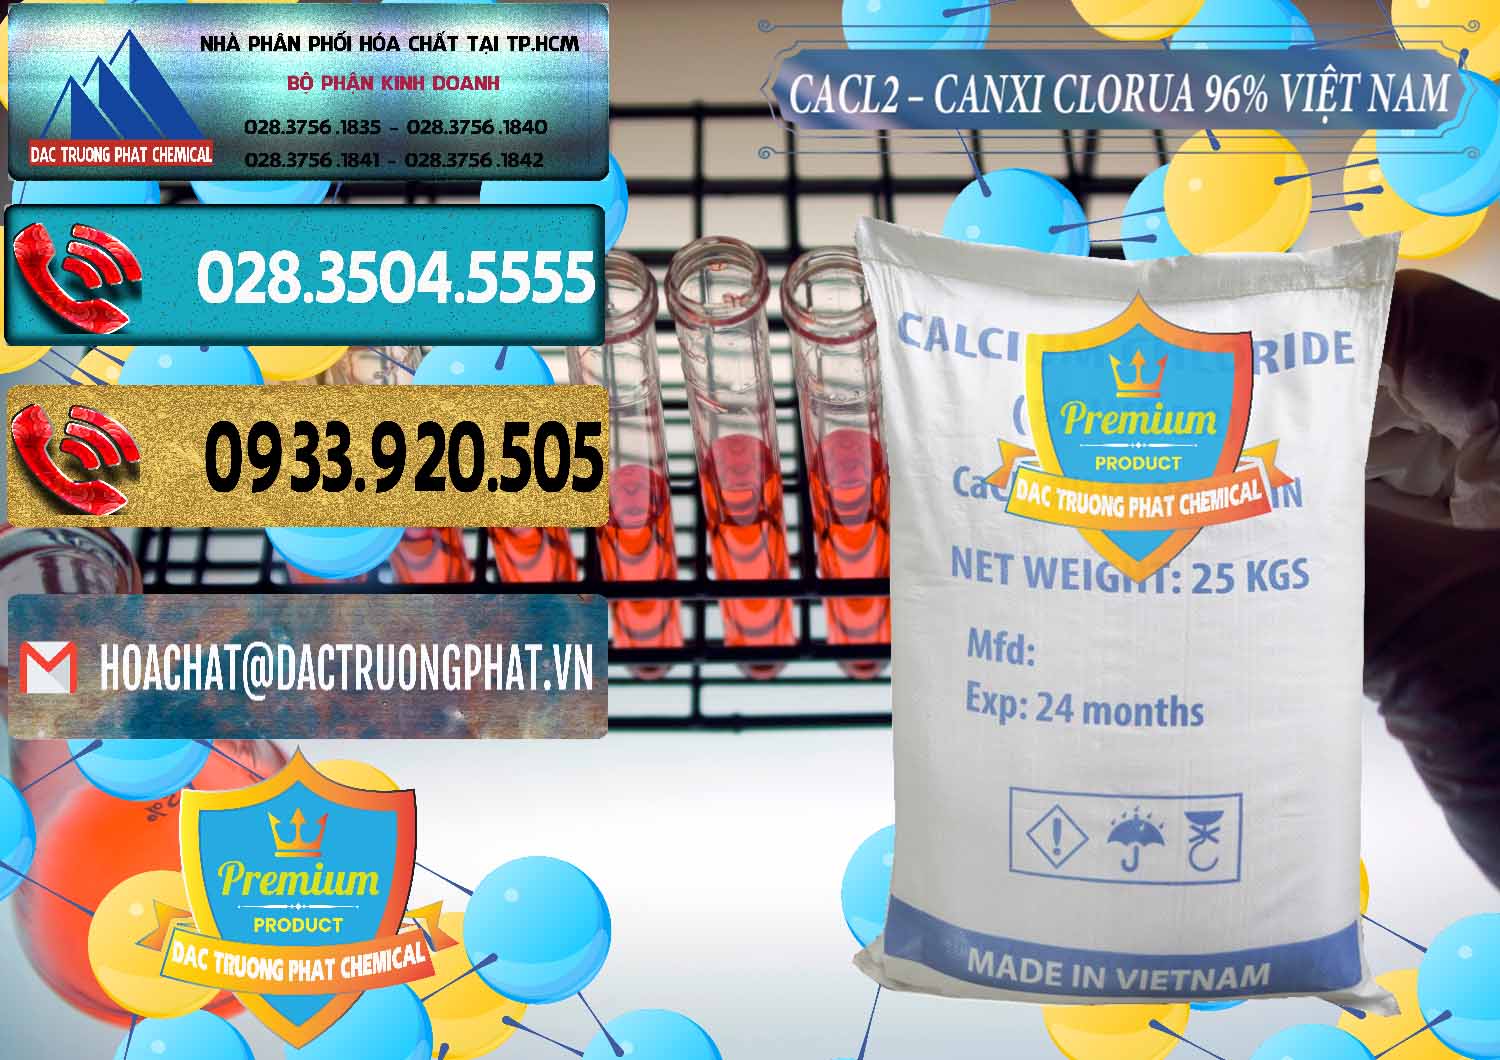 Kinh doanh ( bán ) CaCl2 – Canxi Clorua 96% Việt Nam - 0236 - Phân phối & cung cấp hóa chất tại TP.HCM - hoachatdetnhuom.com